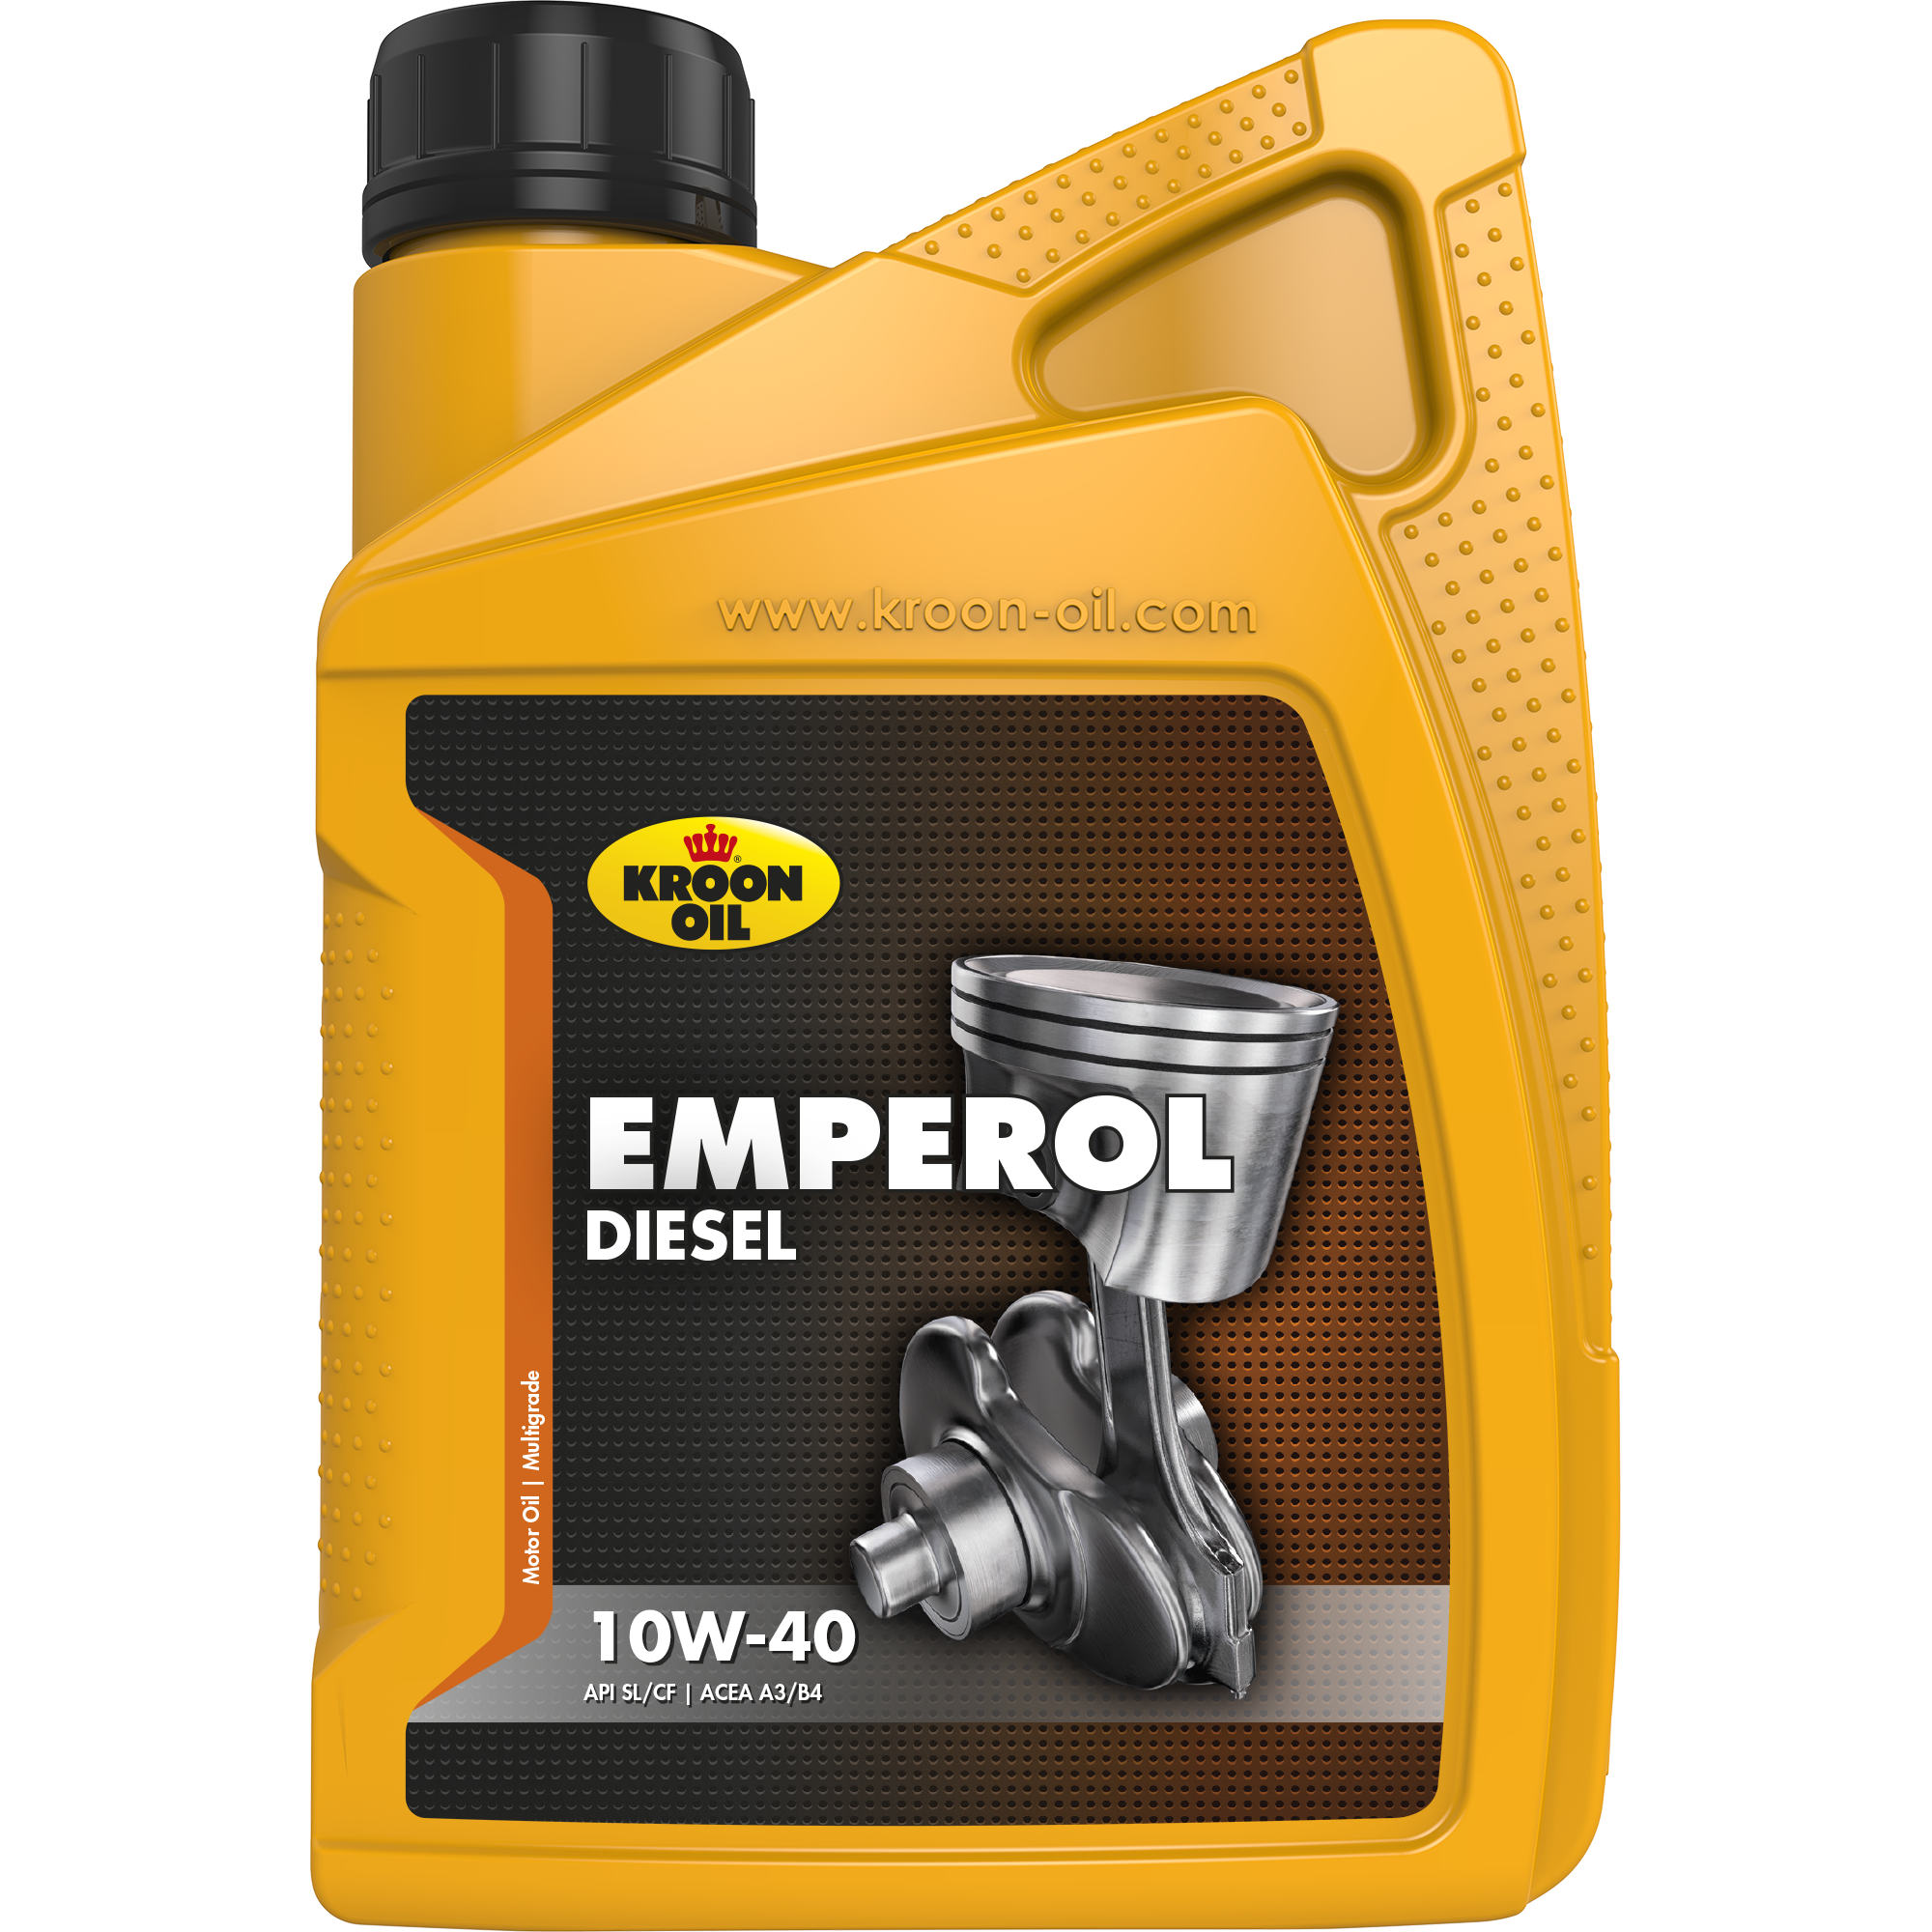 Kroon-Oil Emperol Diesel 10W-40, 1 lt